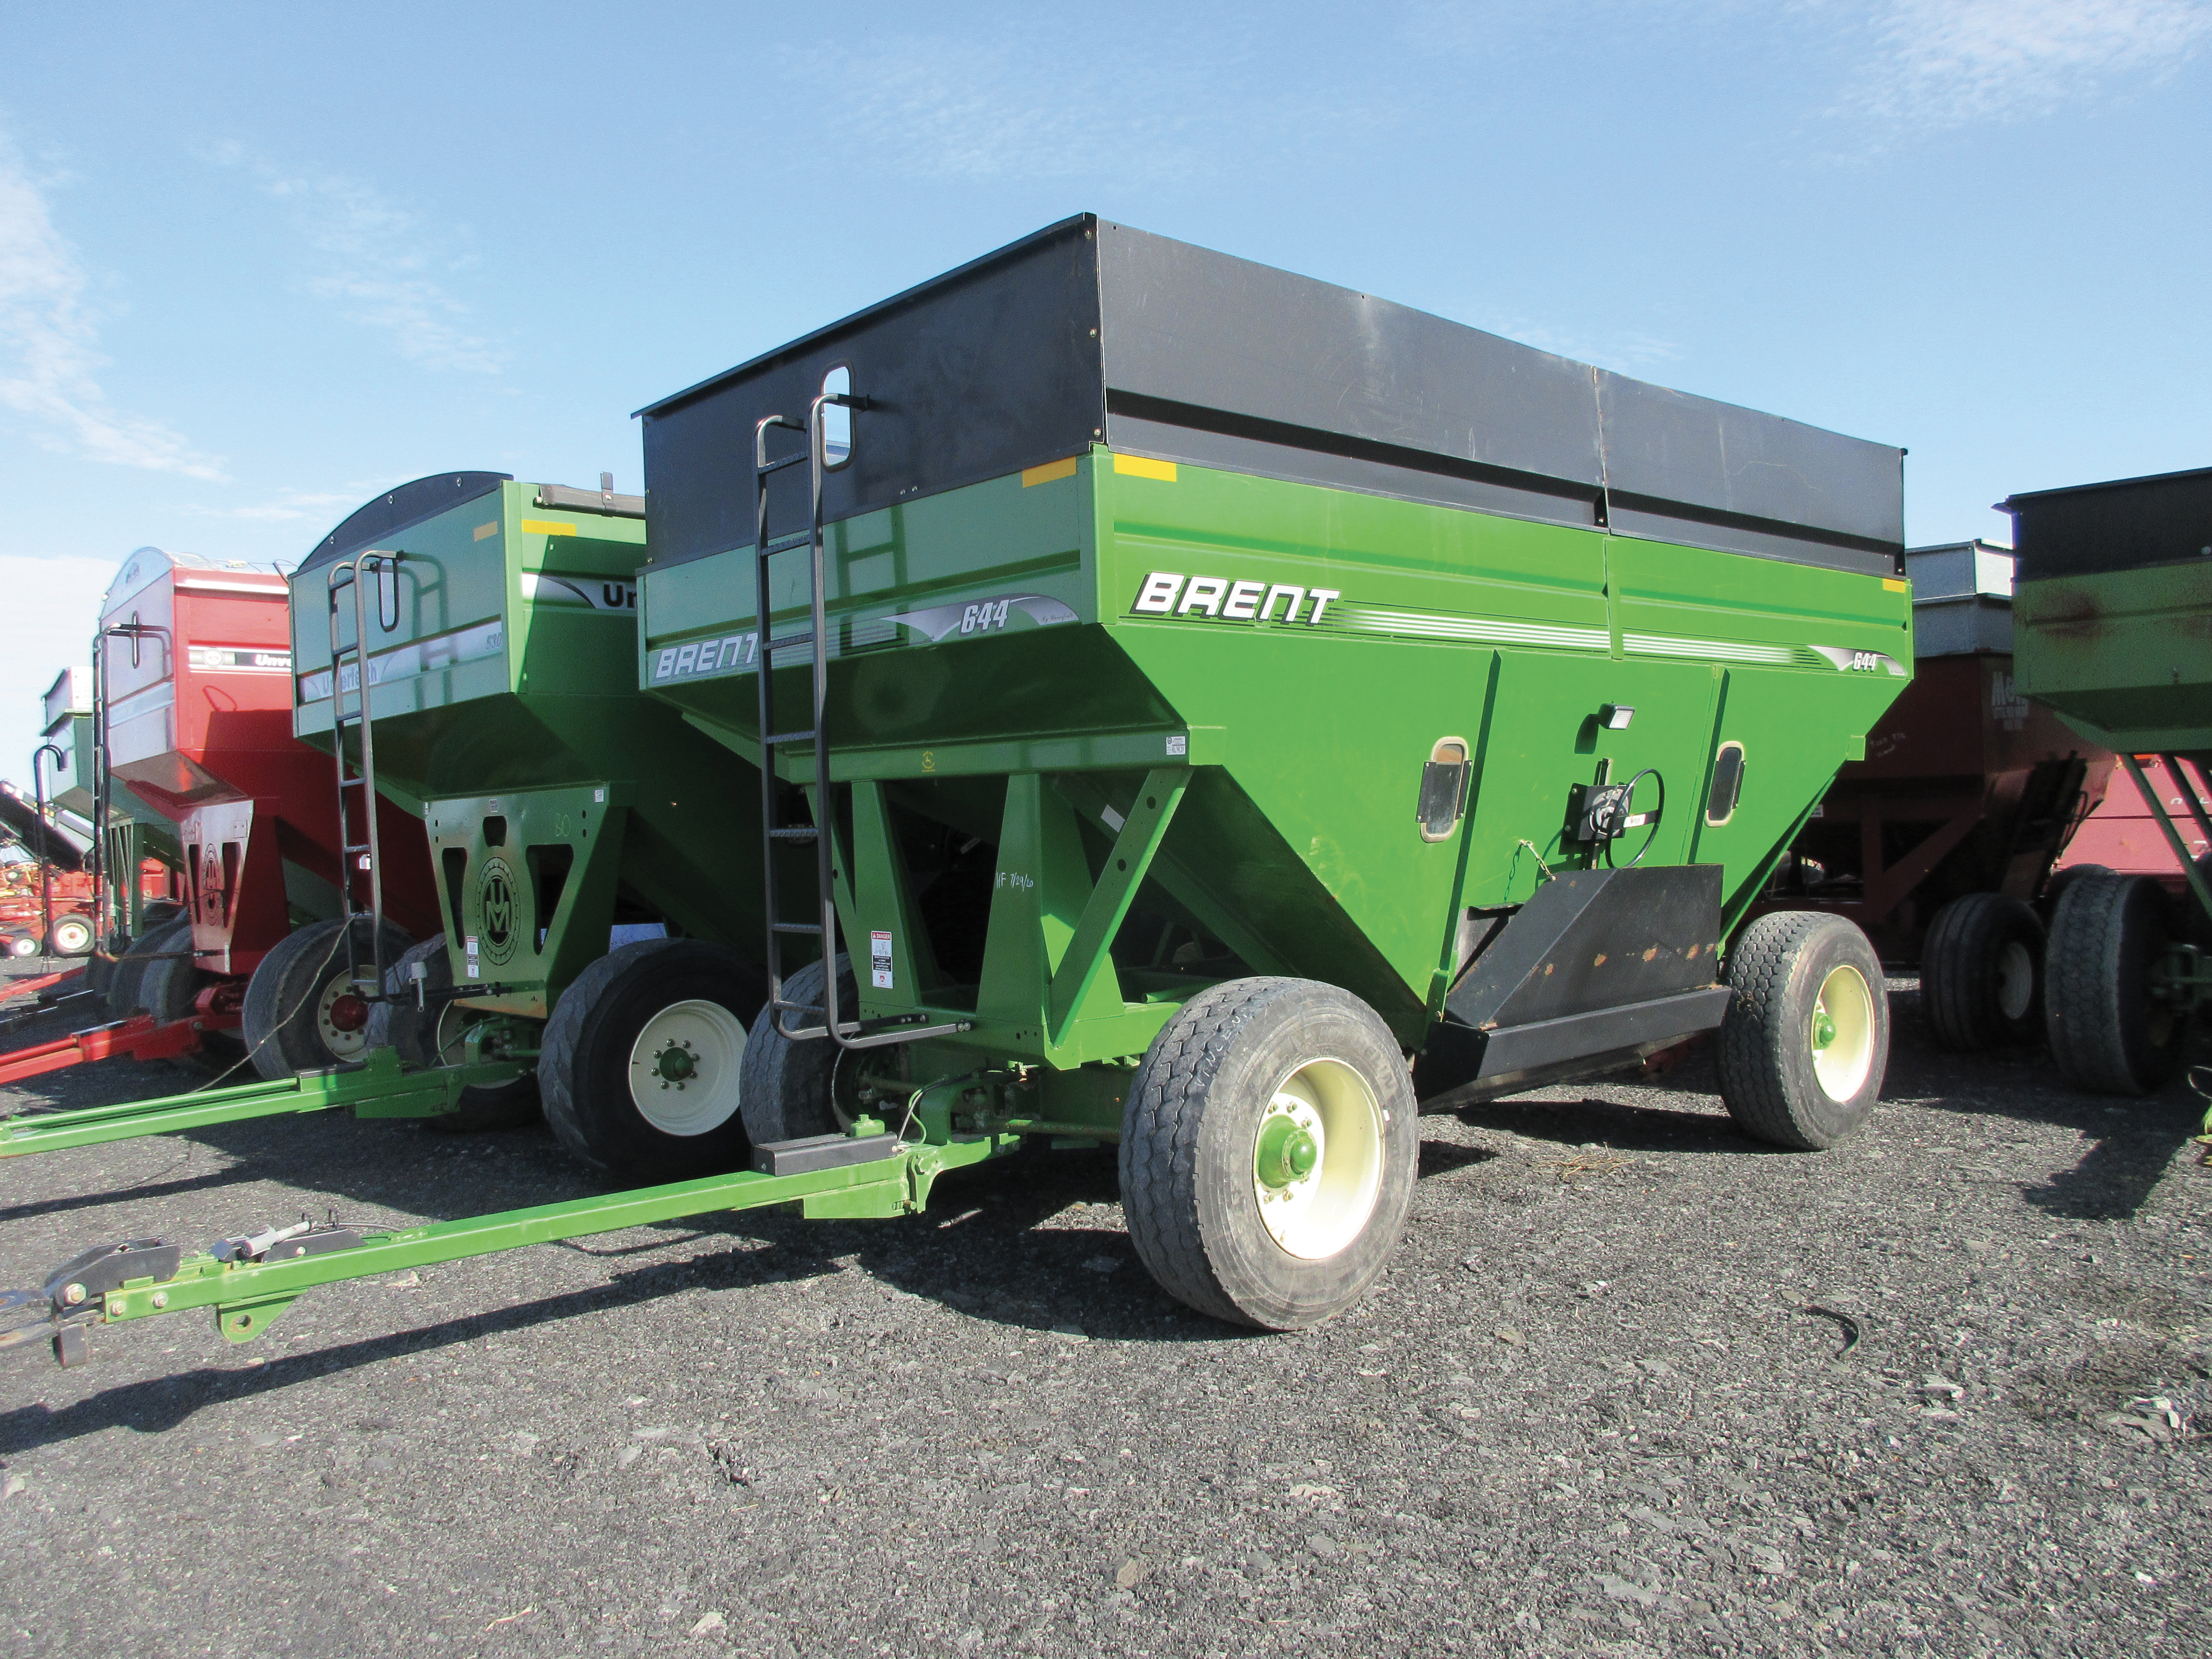 Grain trailer Brent 644